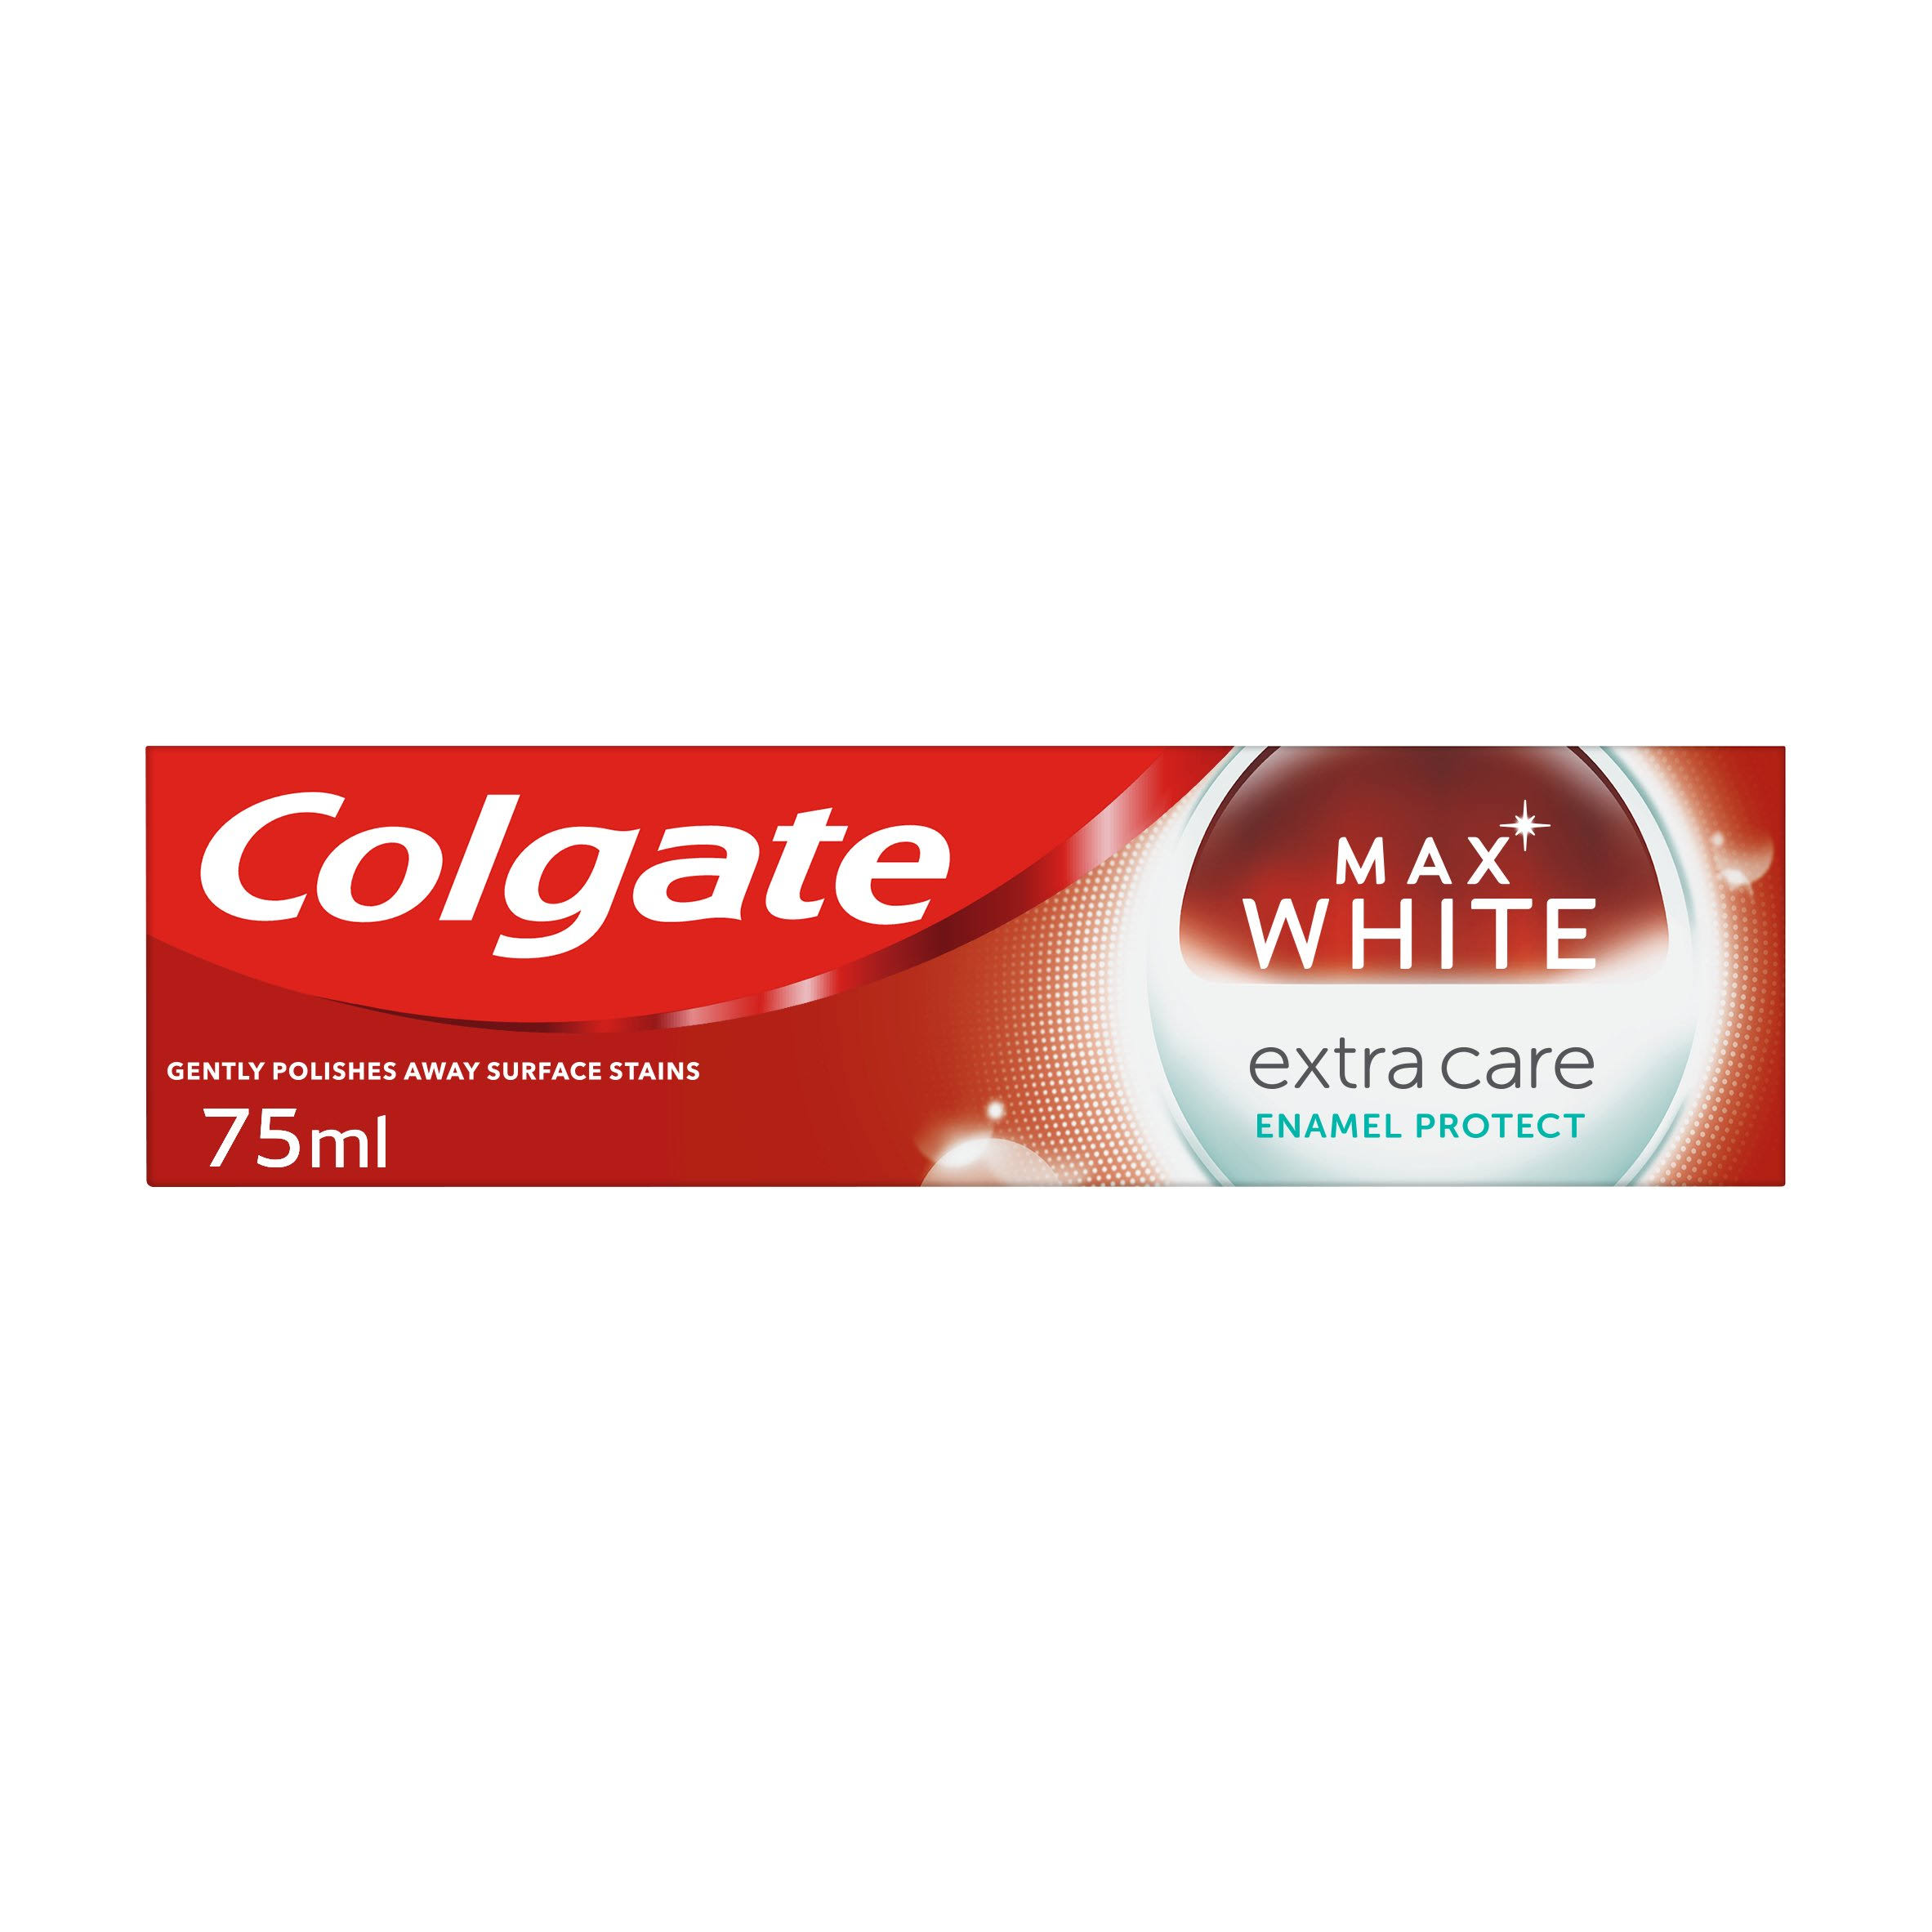 Colgate Max White Extra Care Enamel 75ml Toothpaste